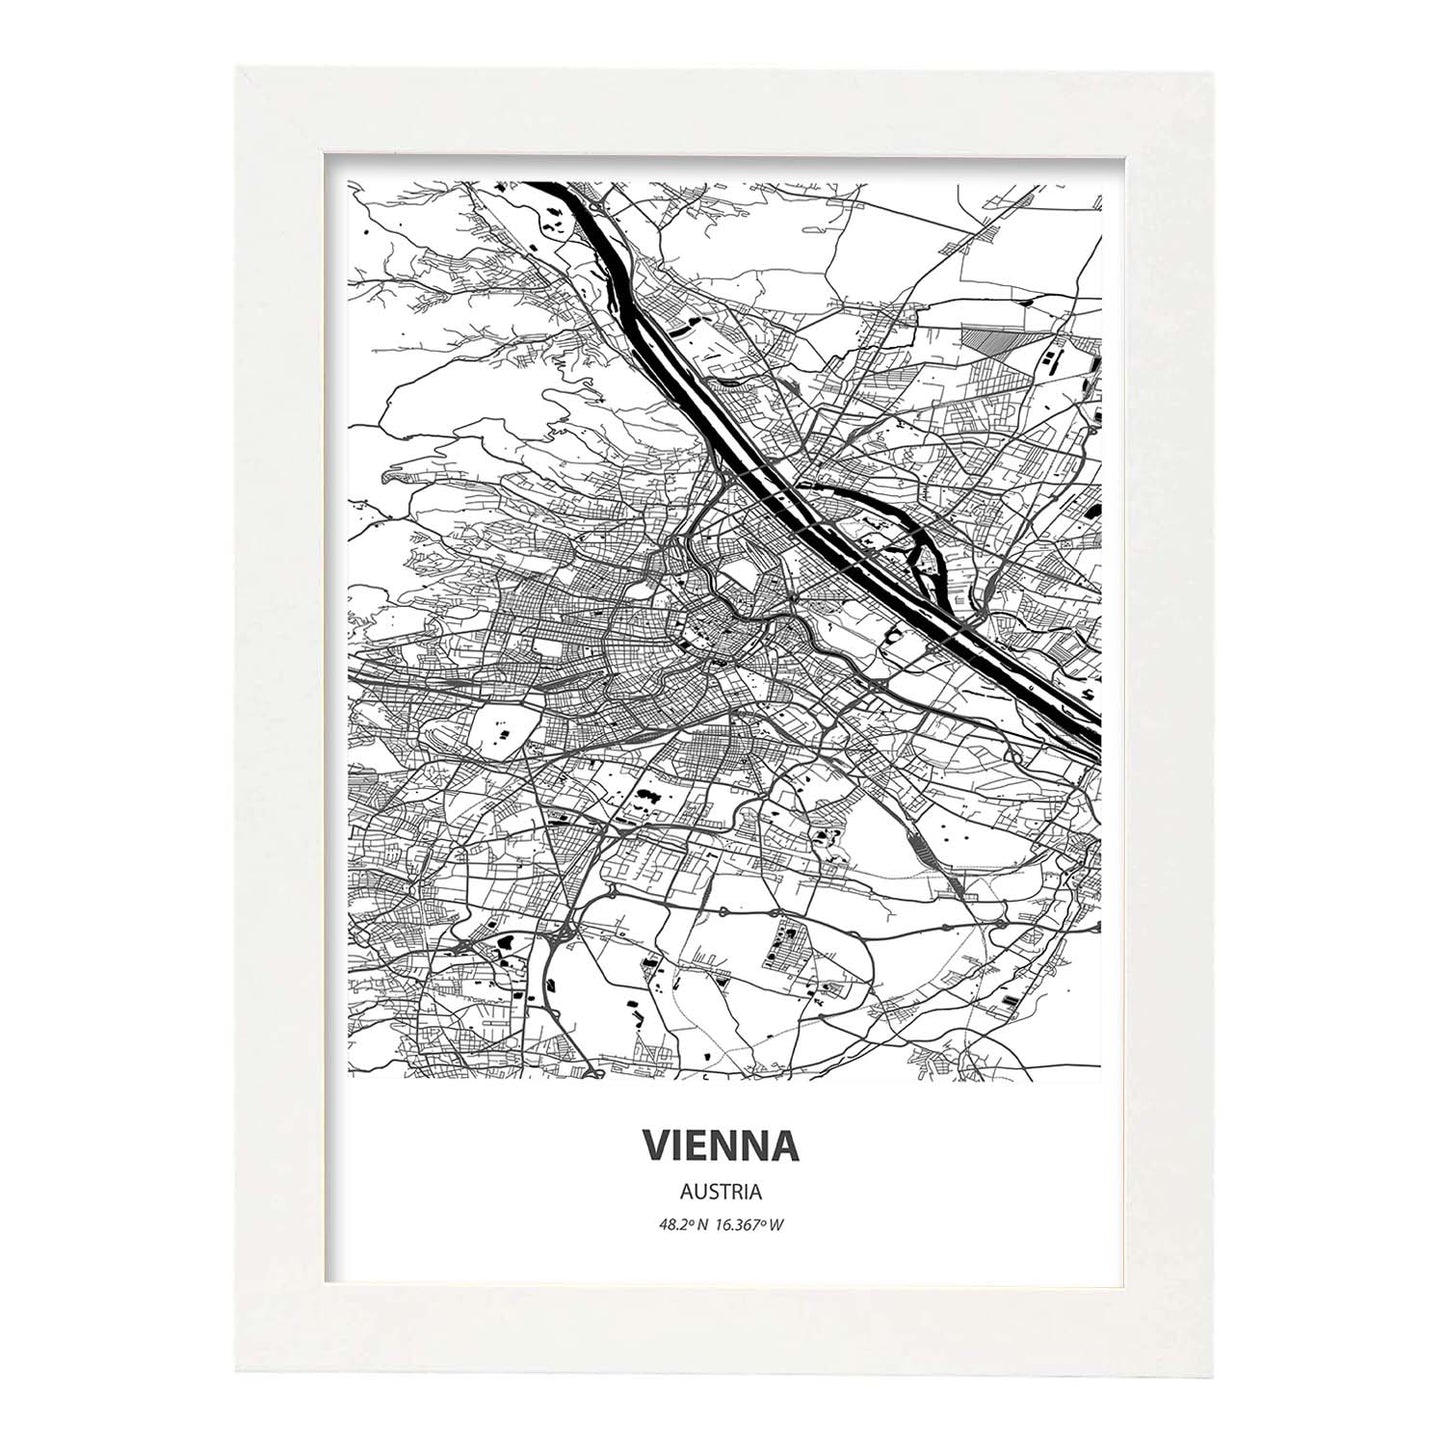 Poster con mapa de Vienna - Austria. Láminas de ciudades de Europa con mares y ríos en color negro.-Artwork-Nacnic-A4-Marco Blanco-Nacnic Estudio SL